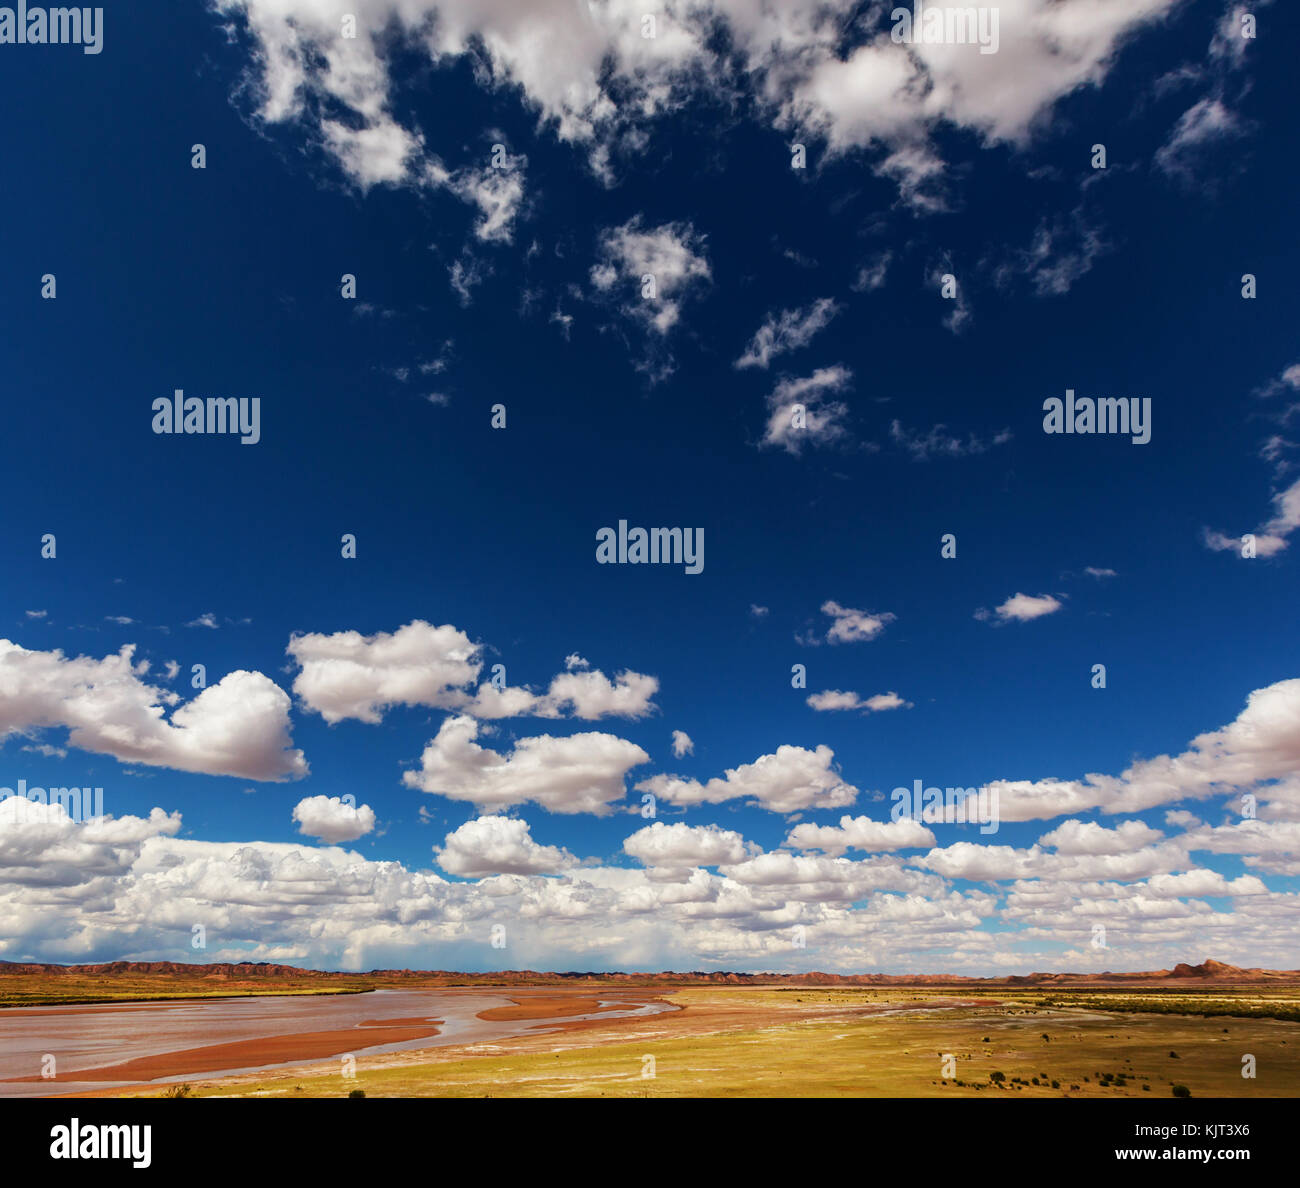 Landschaften in Bolivien, Altiplano, Wüste und grüne Landschaften, Sand und Wasser, Himmel und Erde. schöne Aussicht auf Südamerika Stockfoto